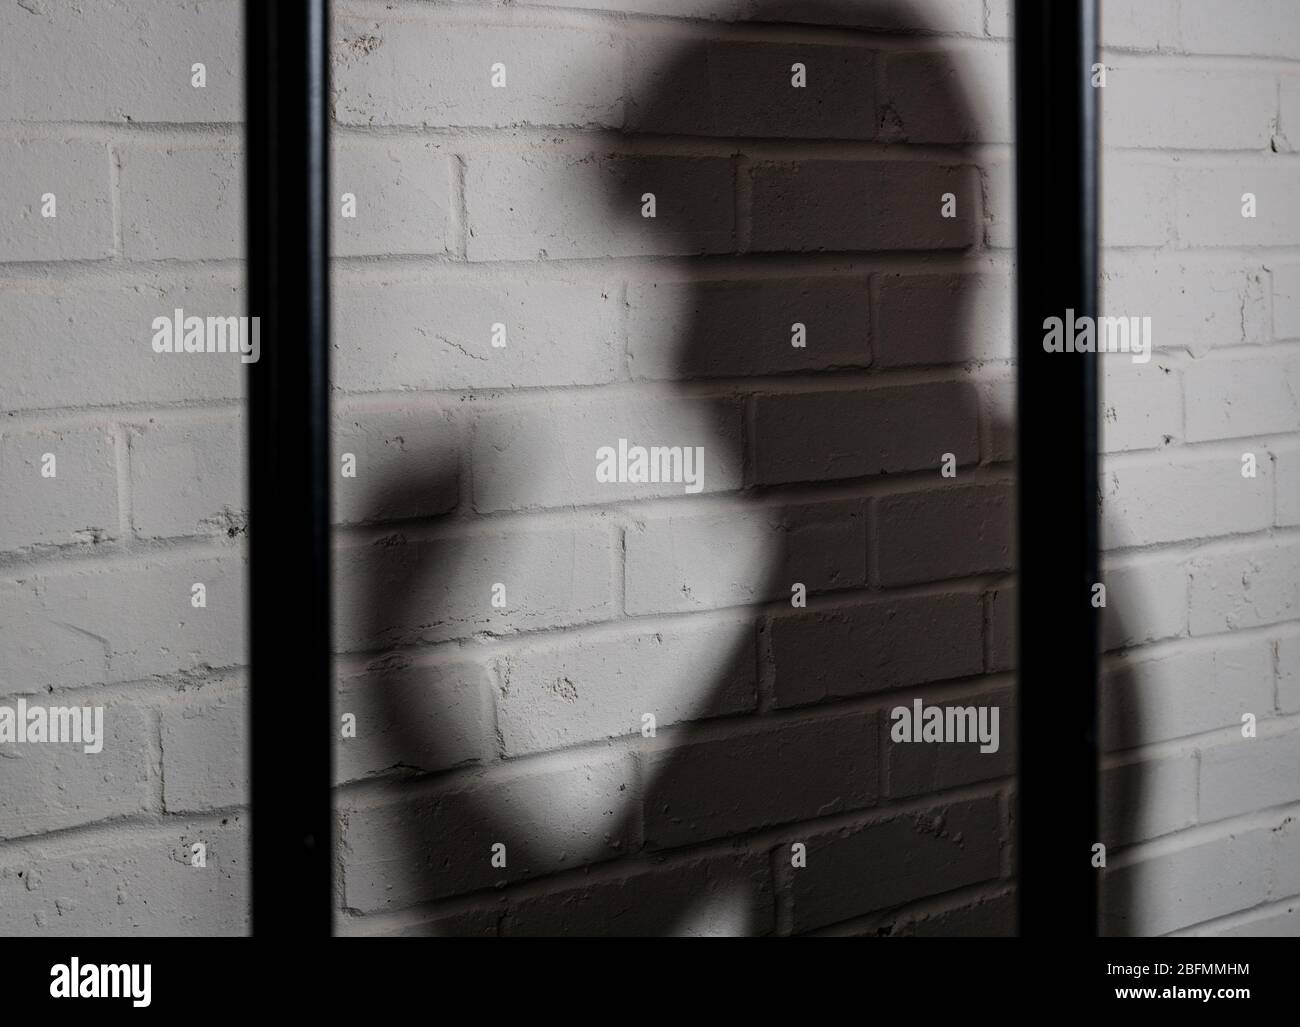 Schatten eines gewalttätigen Gefangenen, Gefängnis Missbrauch Konzept Bild Stockfoto